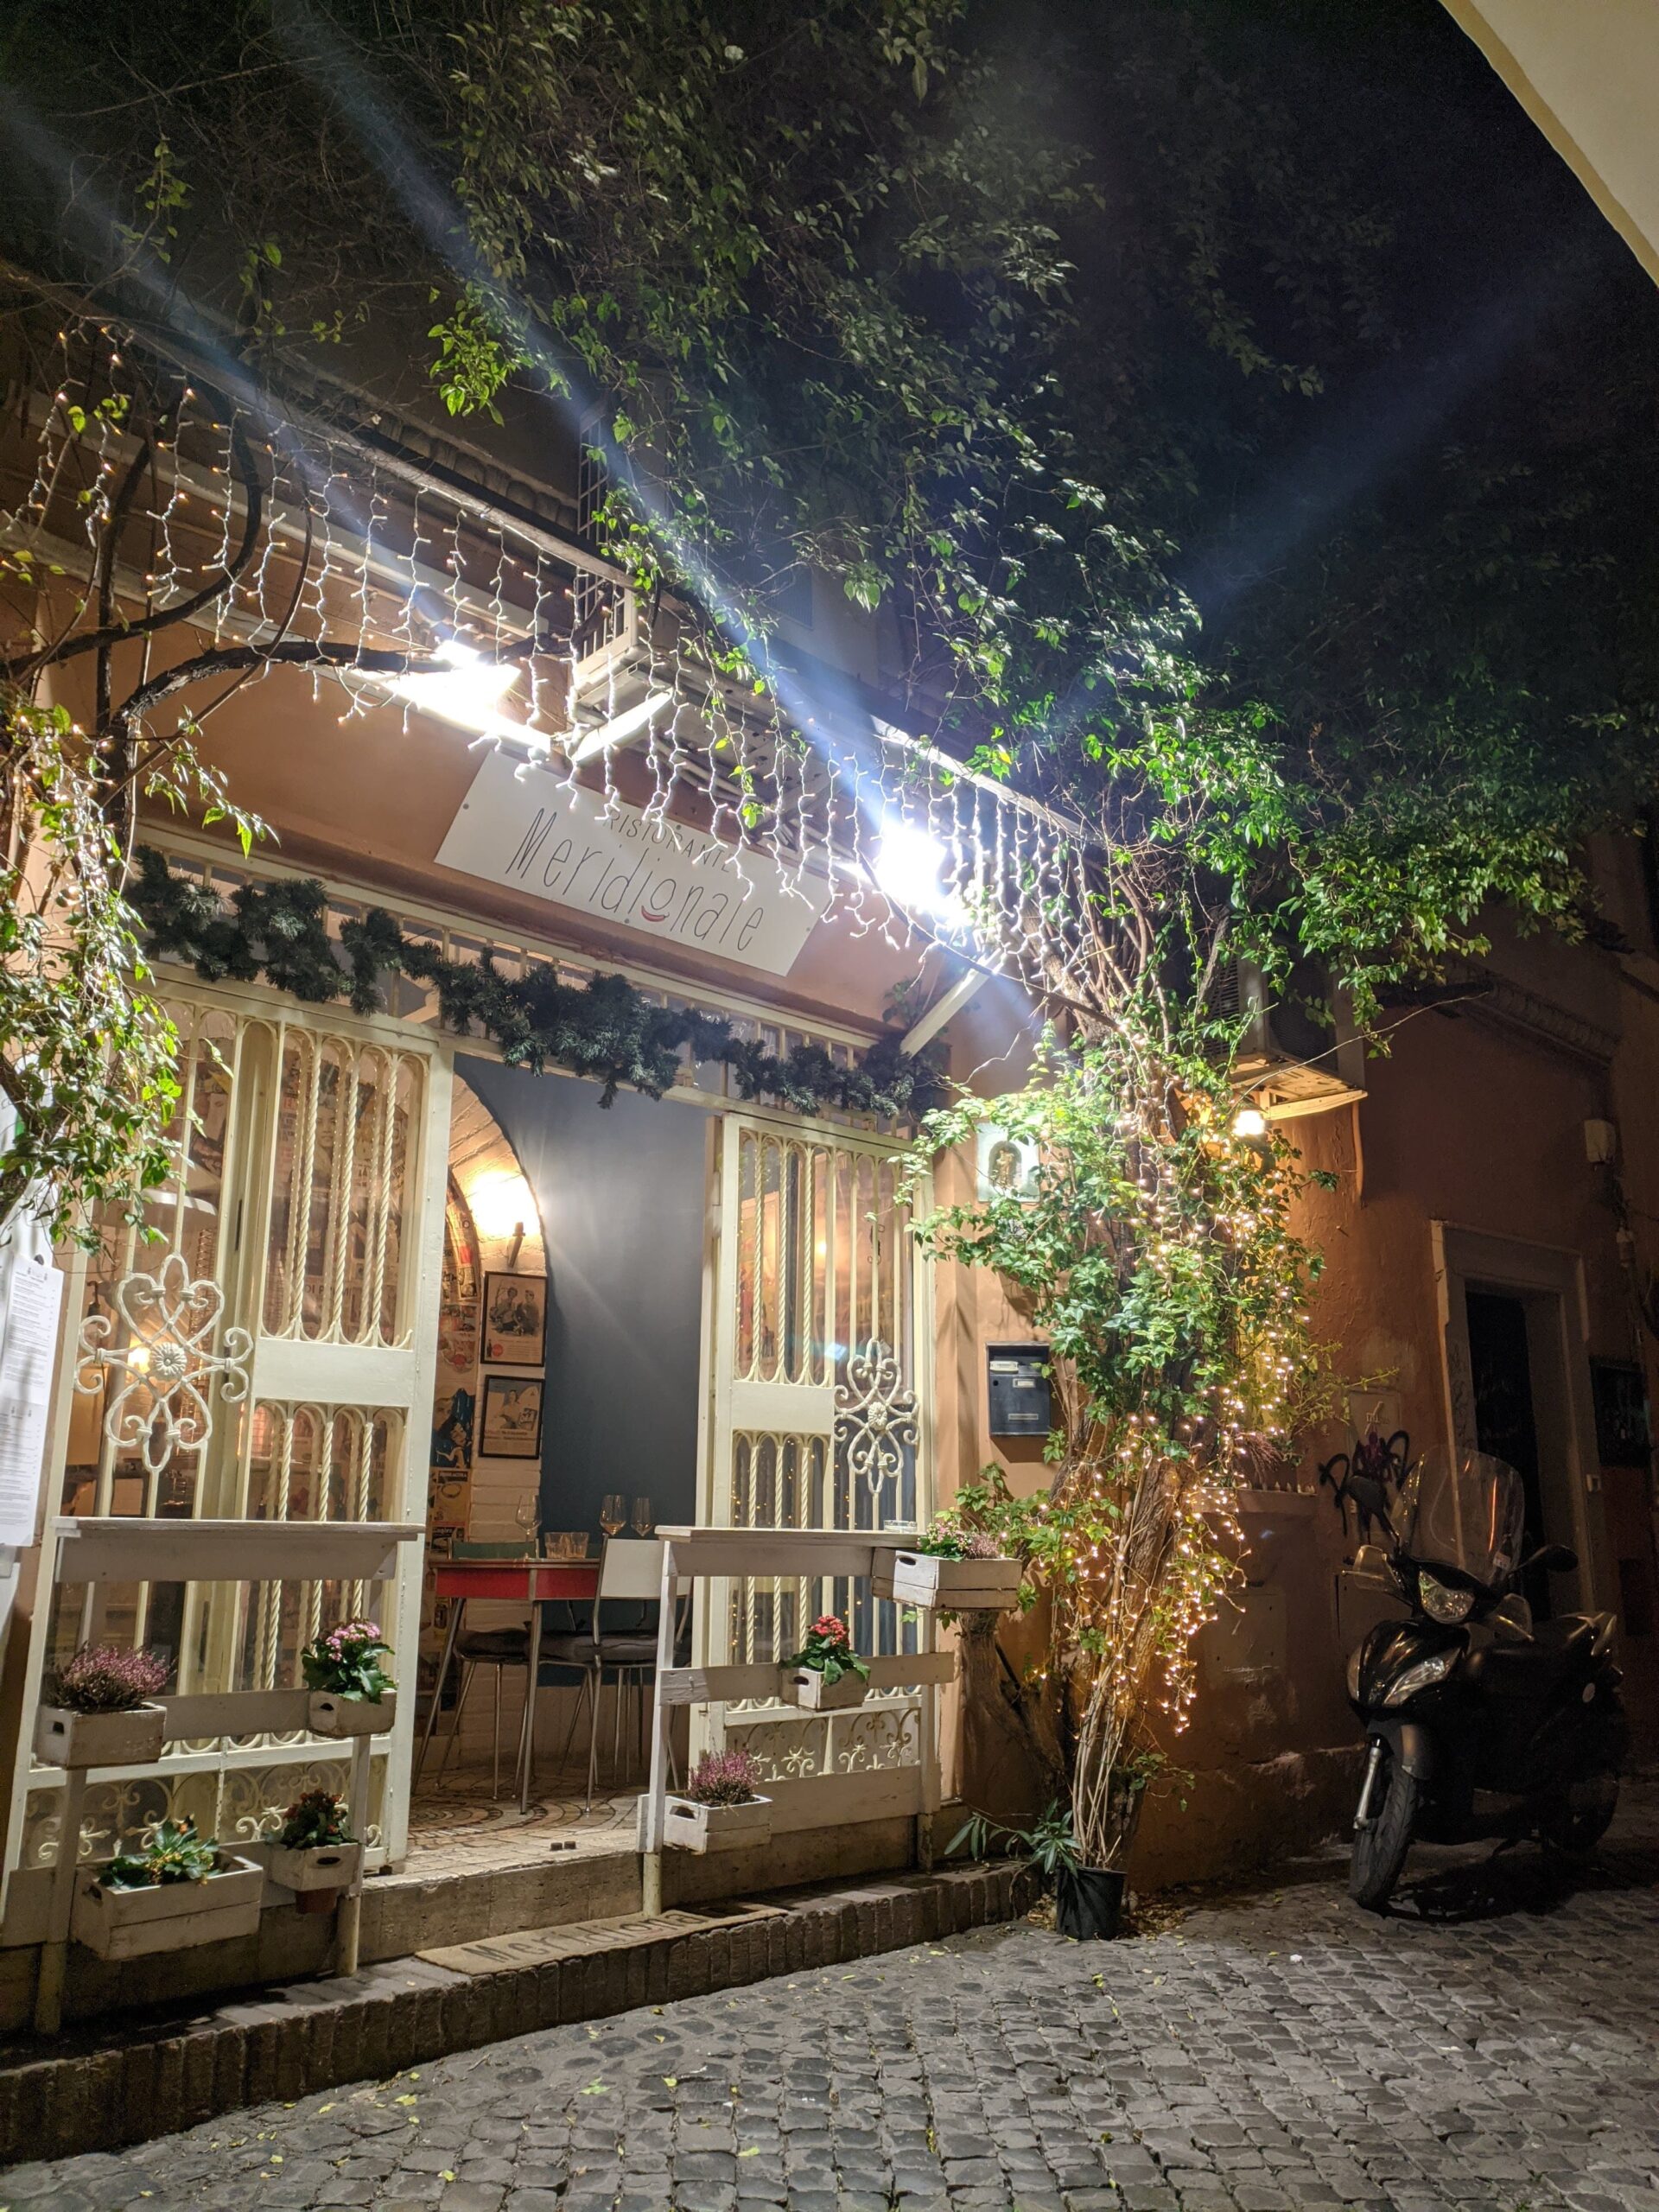 Uma pequena entrada de restaurante em Trastevere, iluminada por luzes decorativas que destacam a vegetação e a arquitetura tradicional, com uma motocicleta estacionada ao lado, criando um ambiente convidativo e intimista.